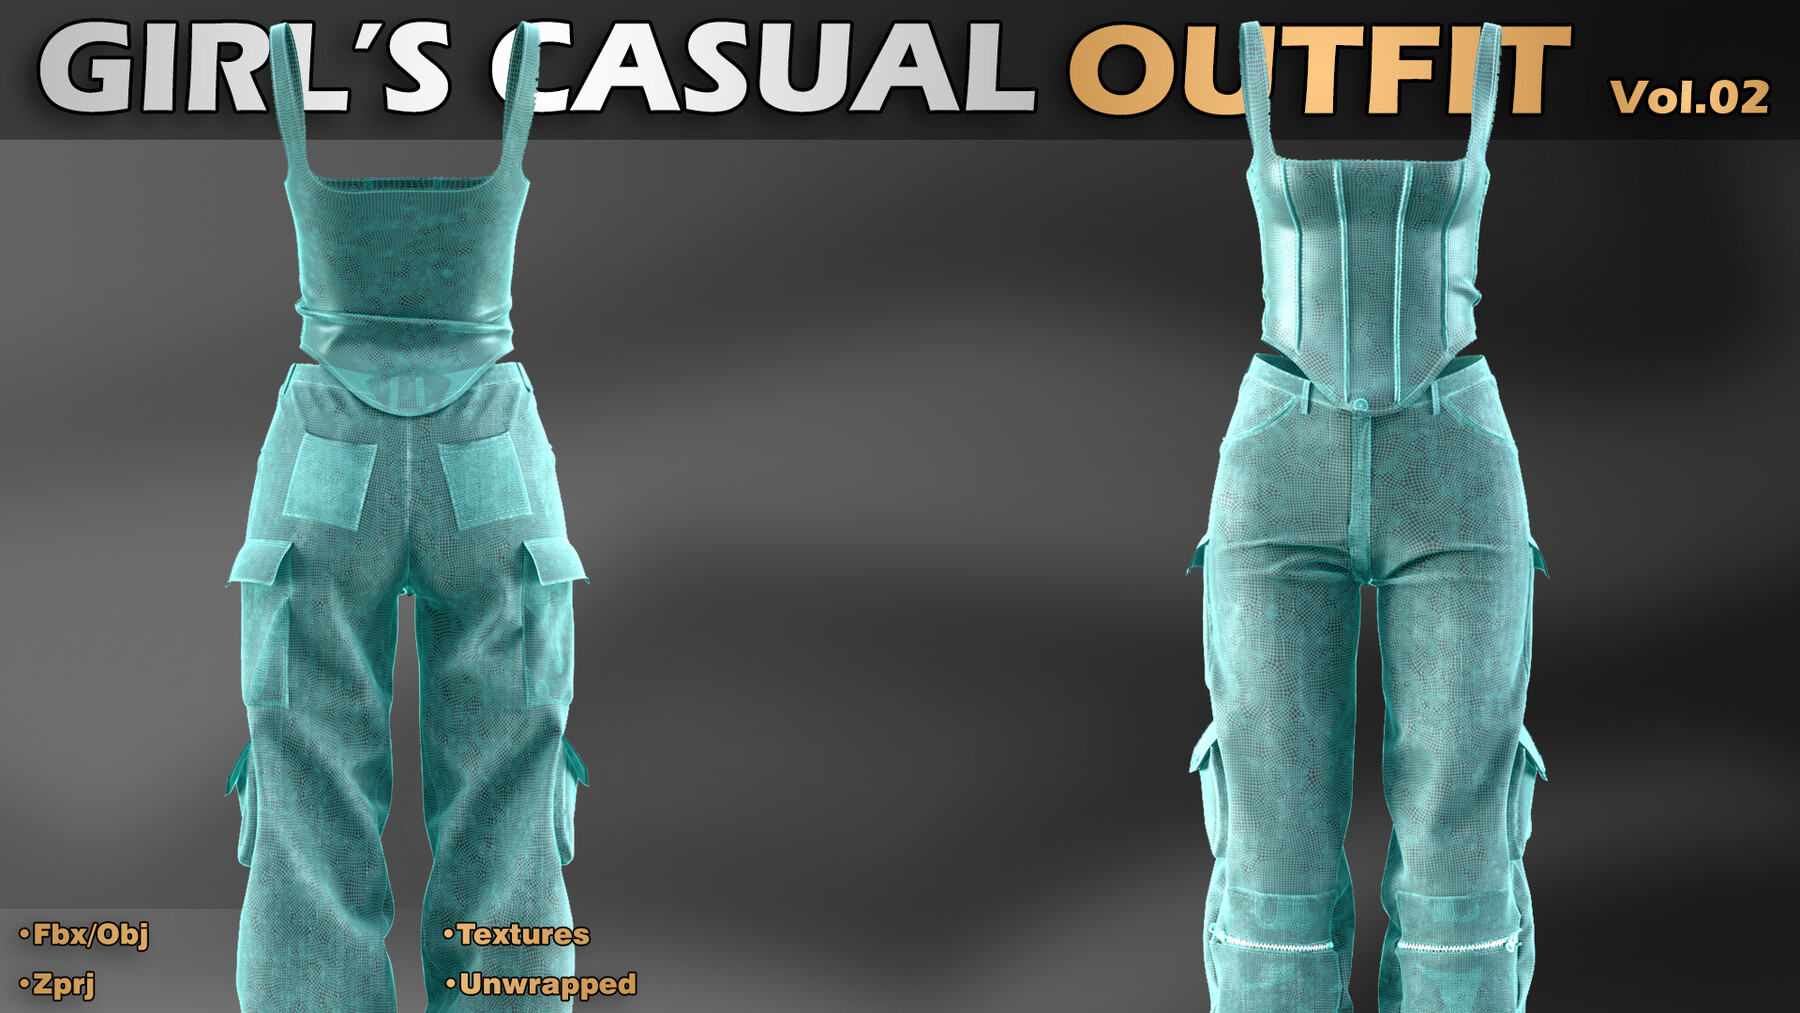 ArtStation - Girls Casual Outfit - Vol.02 (Zprj/Fbx/Obj) | Game Assets